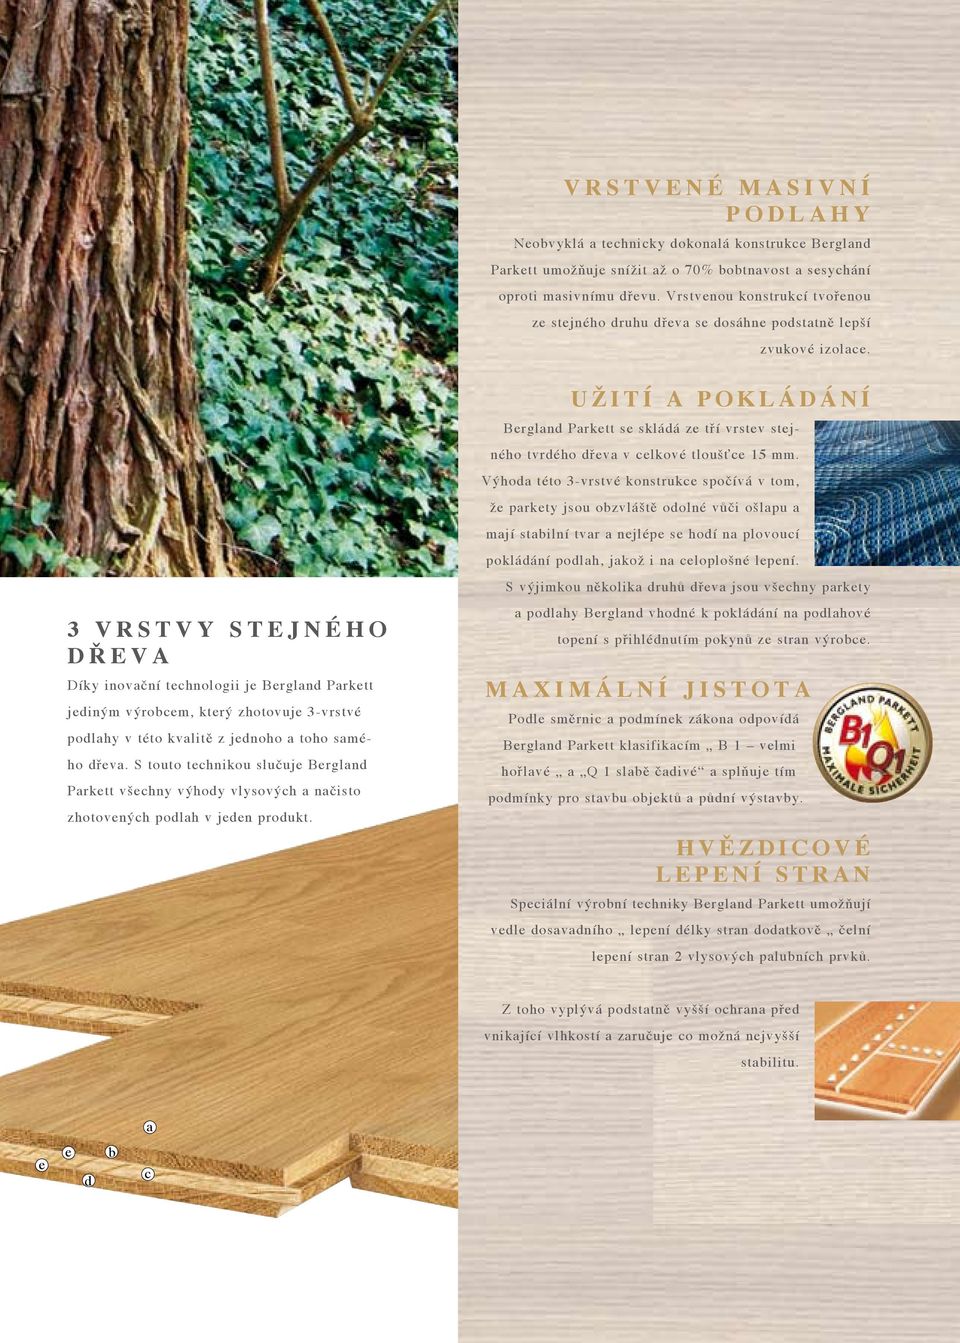 3 v r s t v y s t e j n é h o d ř e v a Díky inovační technologii je Bergland Parkett jediným výrobcem, který zhotovuje 3-vrstvé podlahy v této kvalitě z jednoho a toho samého dřeva.